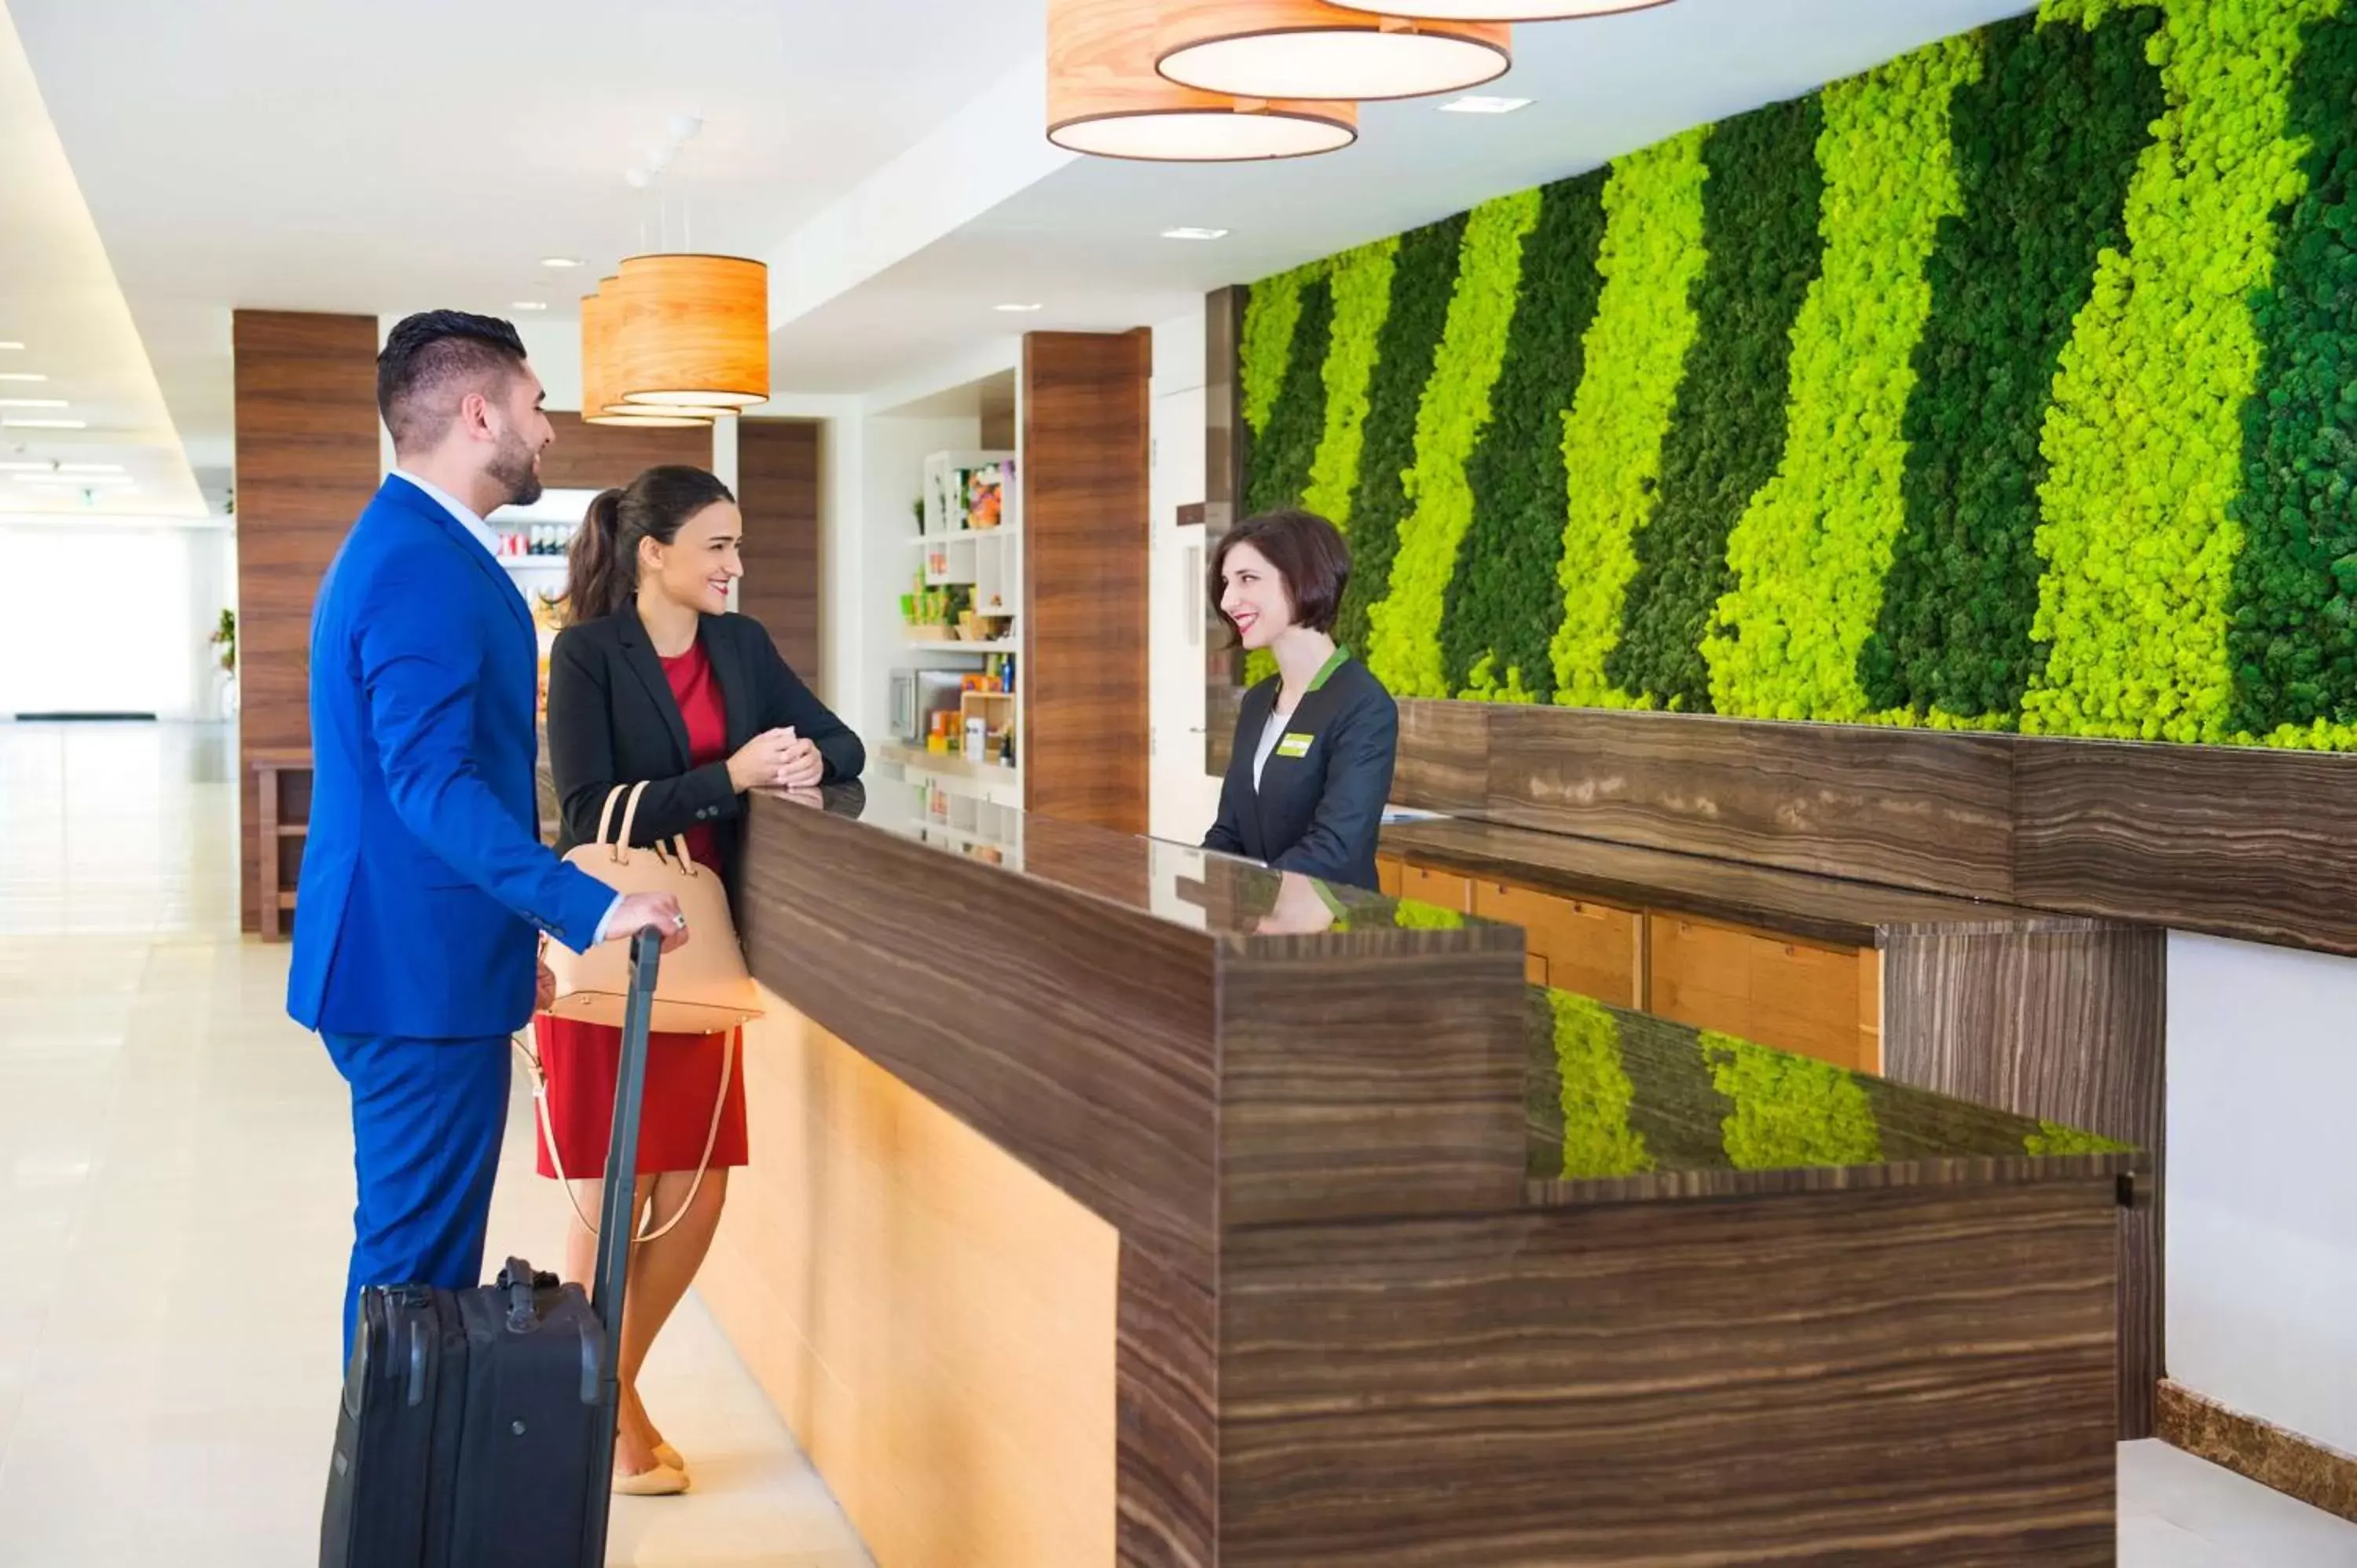 Lobby or reception in Hilton Garden Inn Ras Al Khaimah